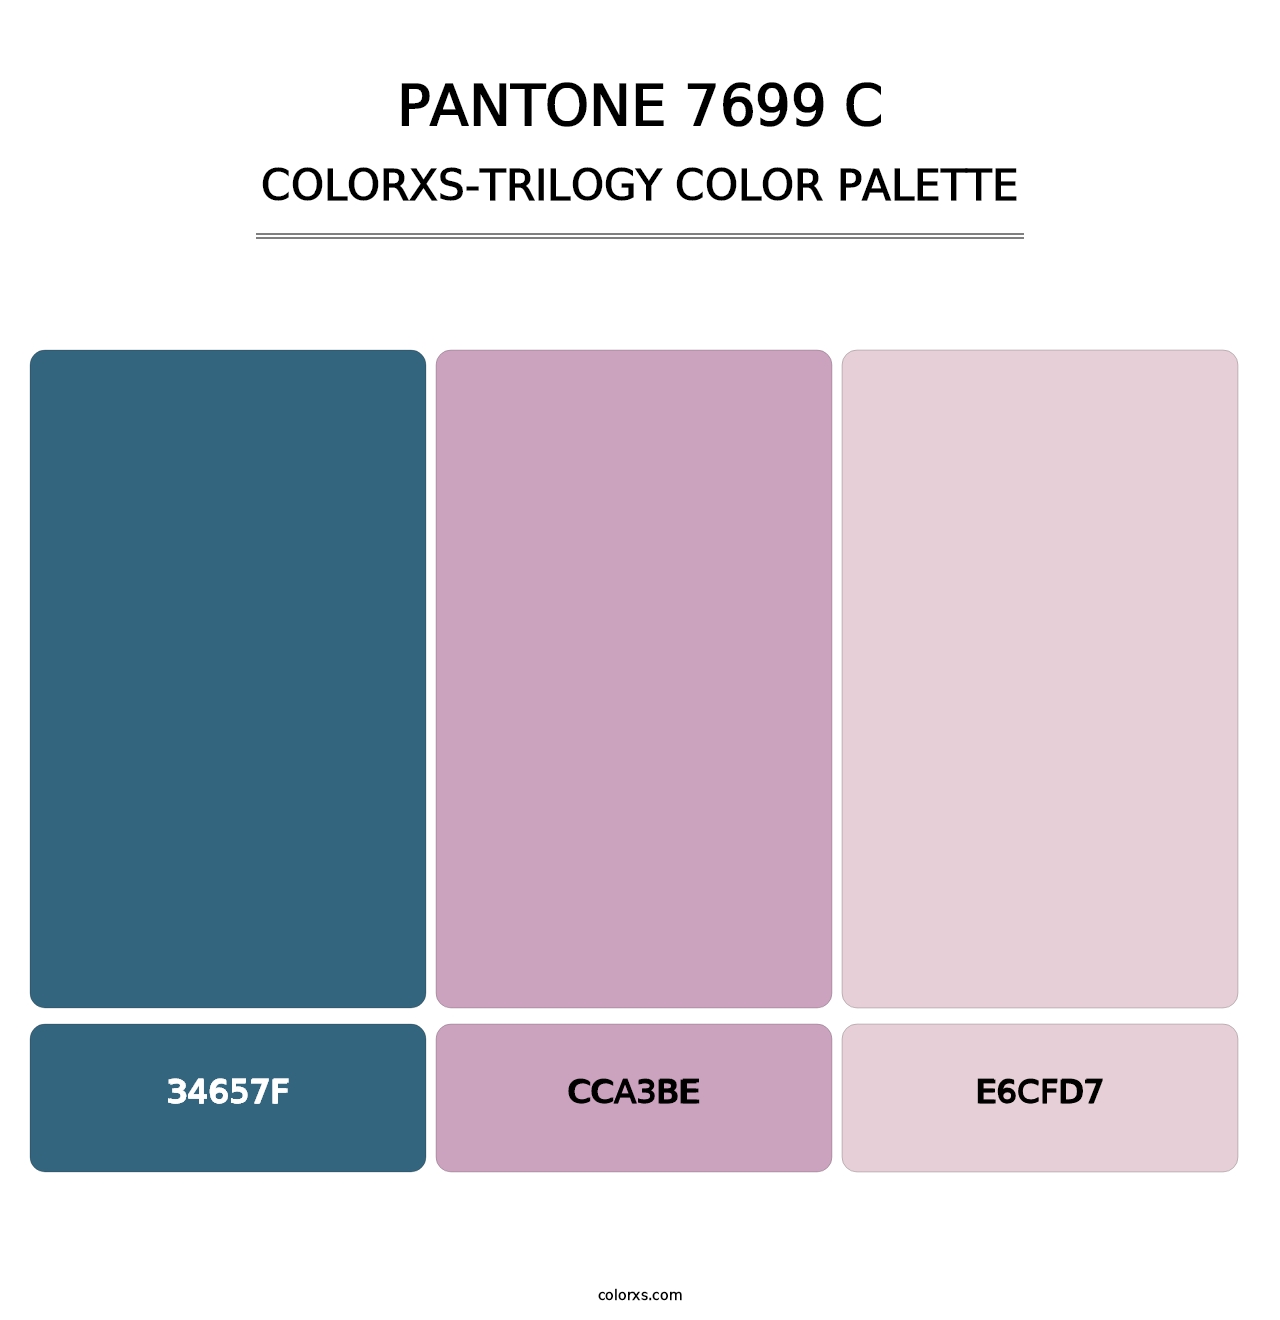 PANTONE 7699 C - Colorxs Trilogy Palette